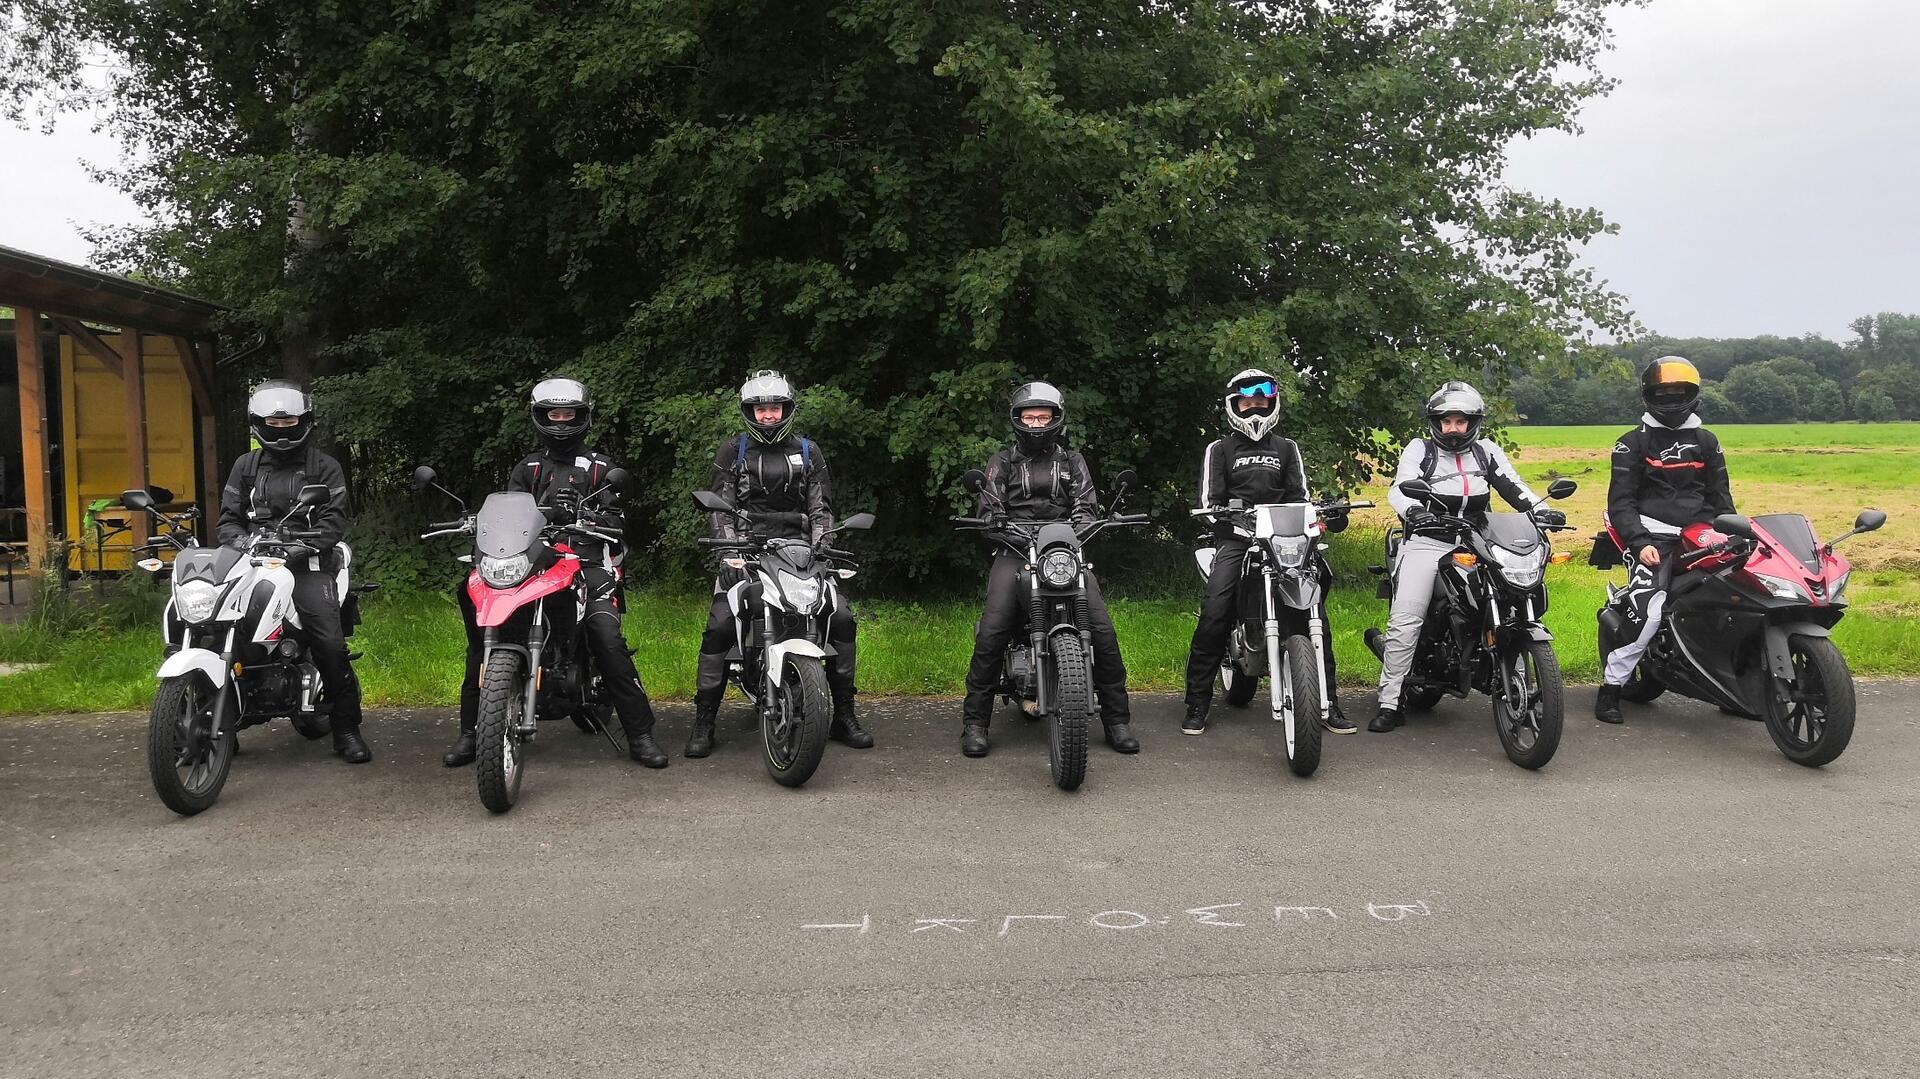 Zu sehen sind sieben Motorradfahrer, die auf aufgereiht auf einem Parkplatz stehen. 